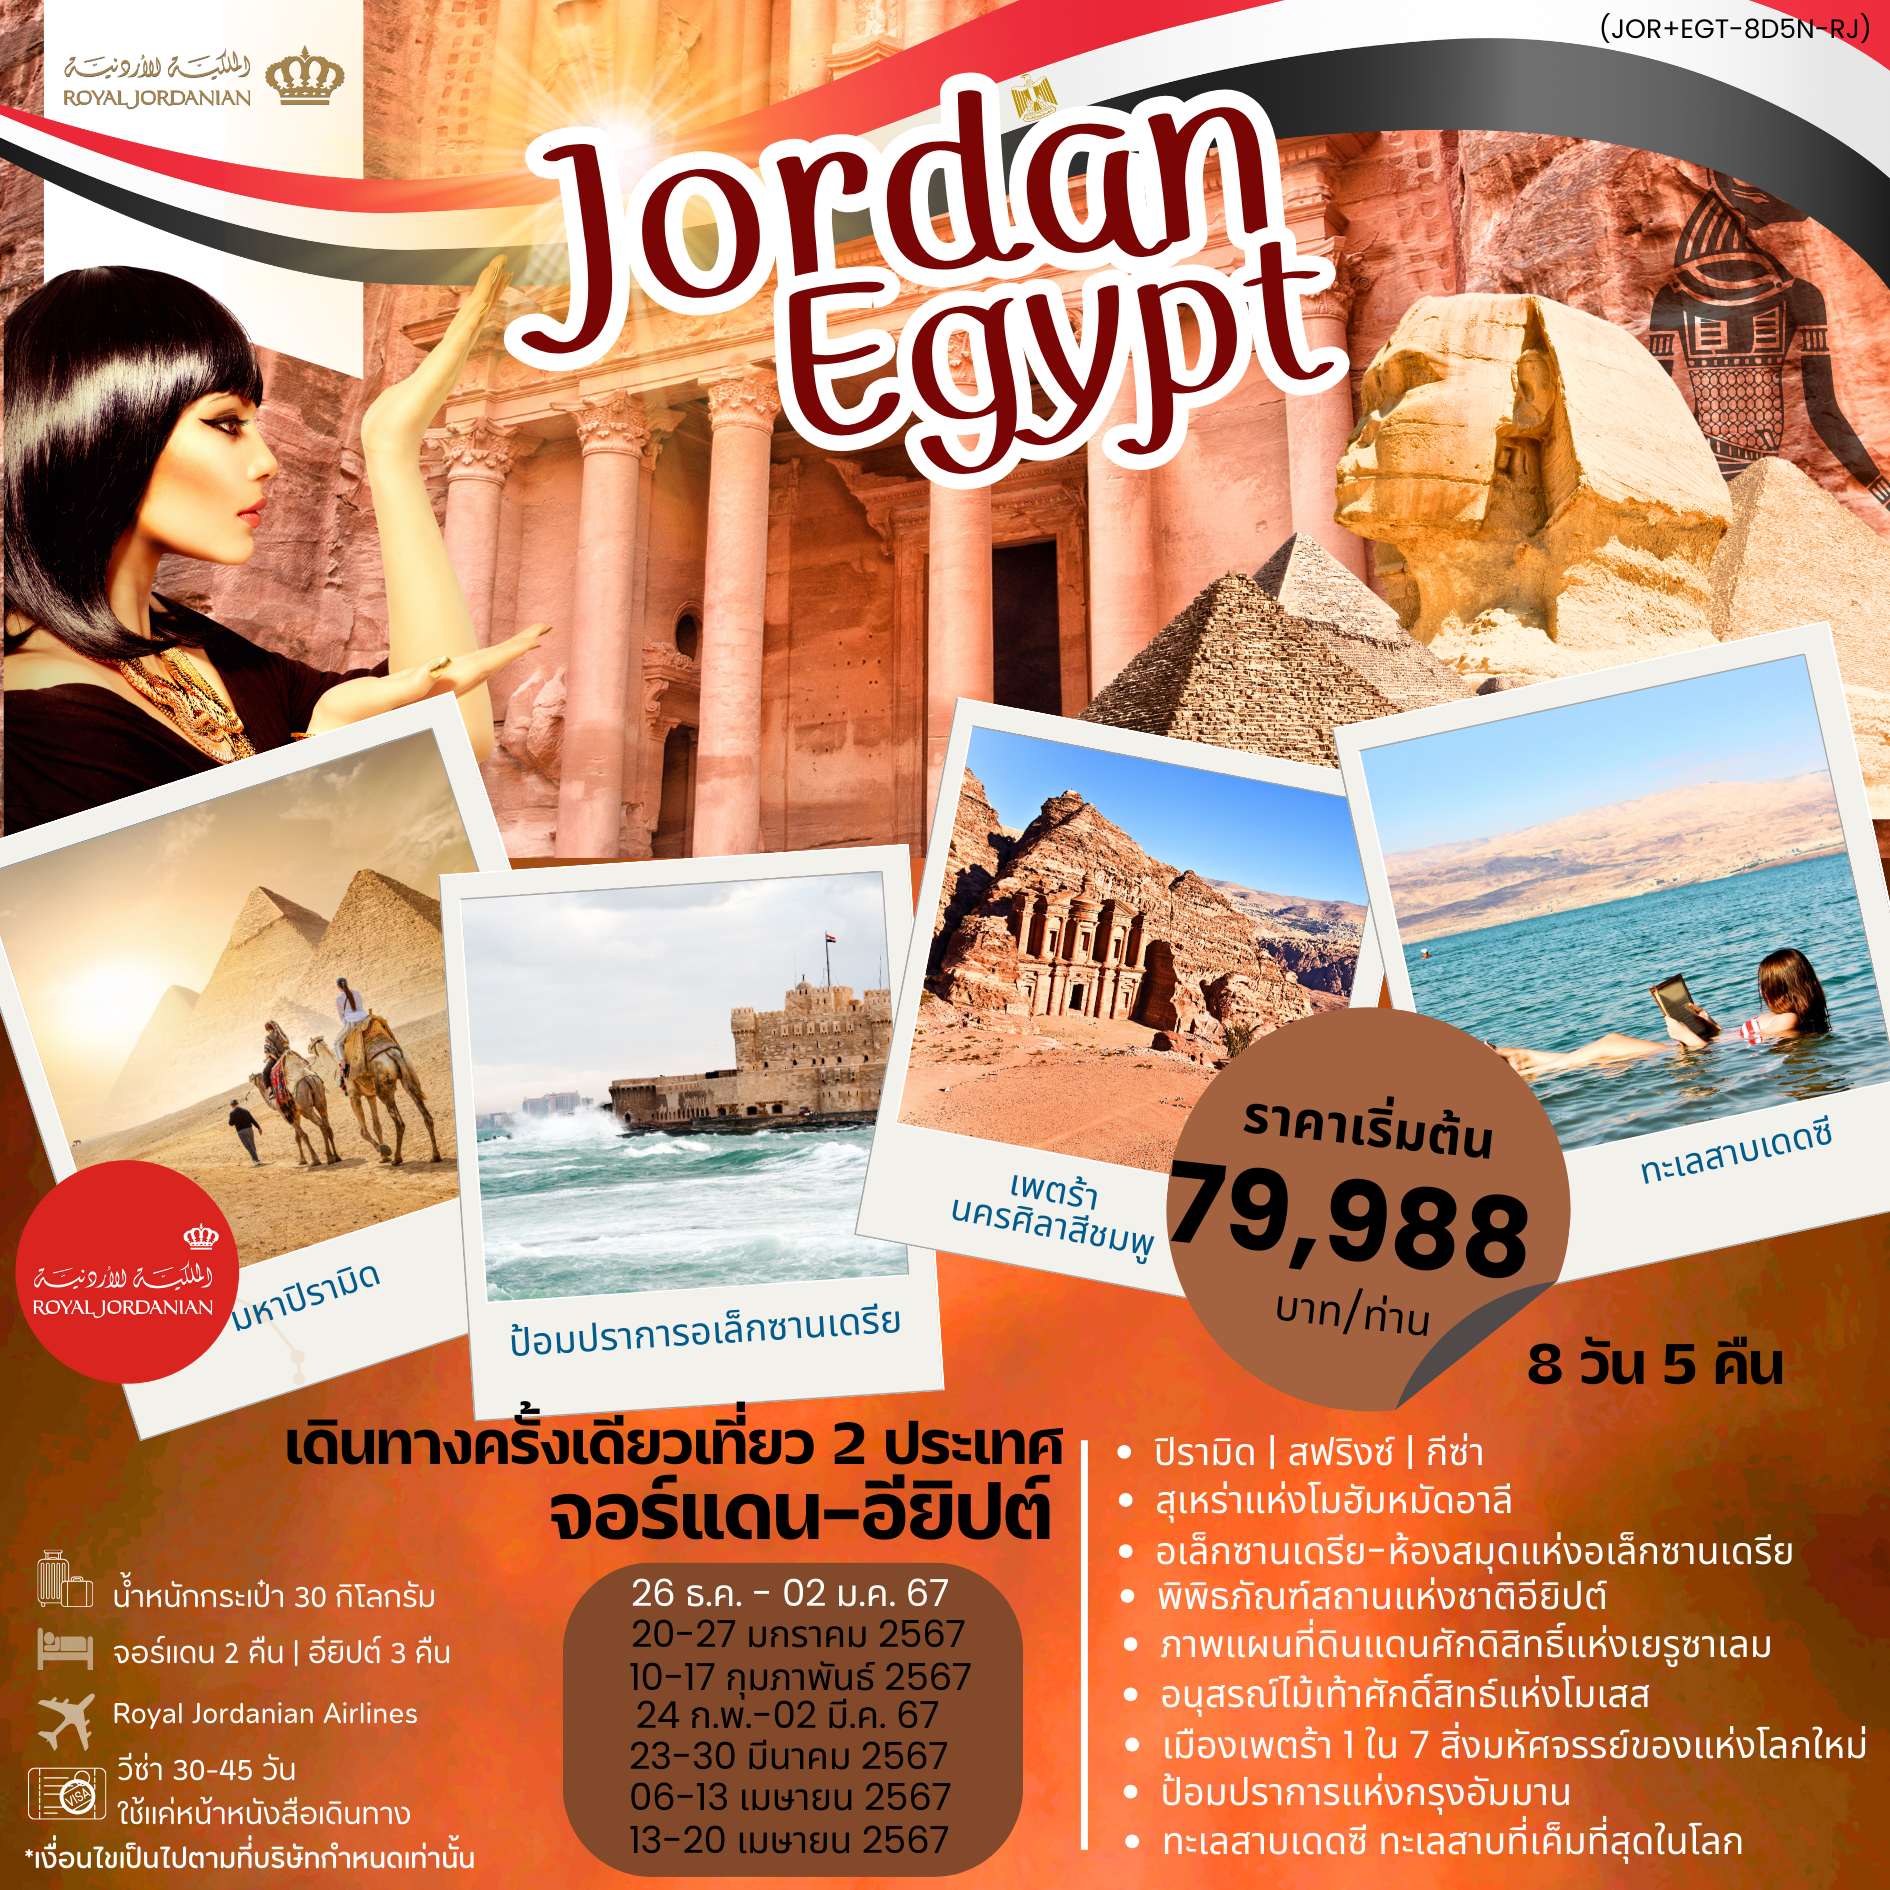 JORDAN EGYPT จอร์แดน อียิปต์ 8D5N by RJ